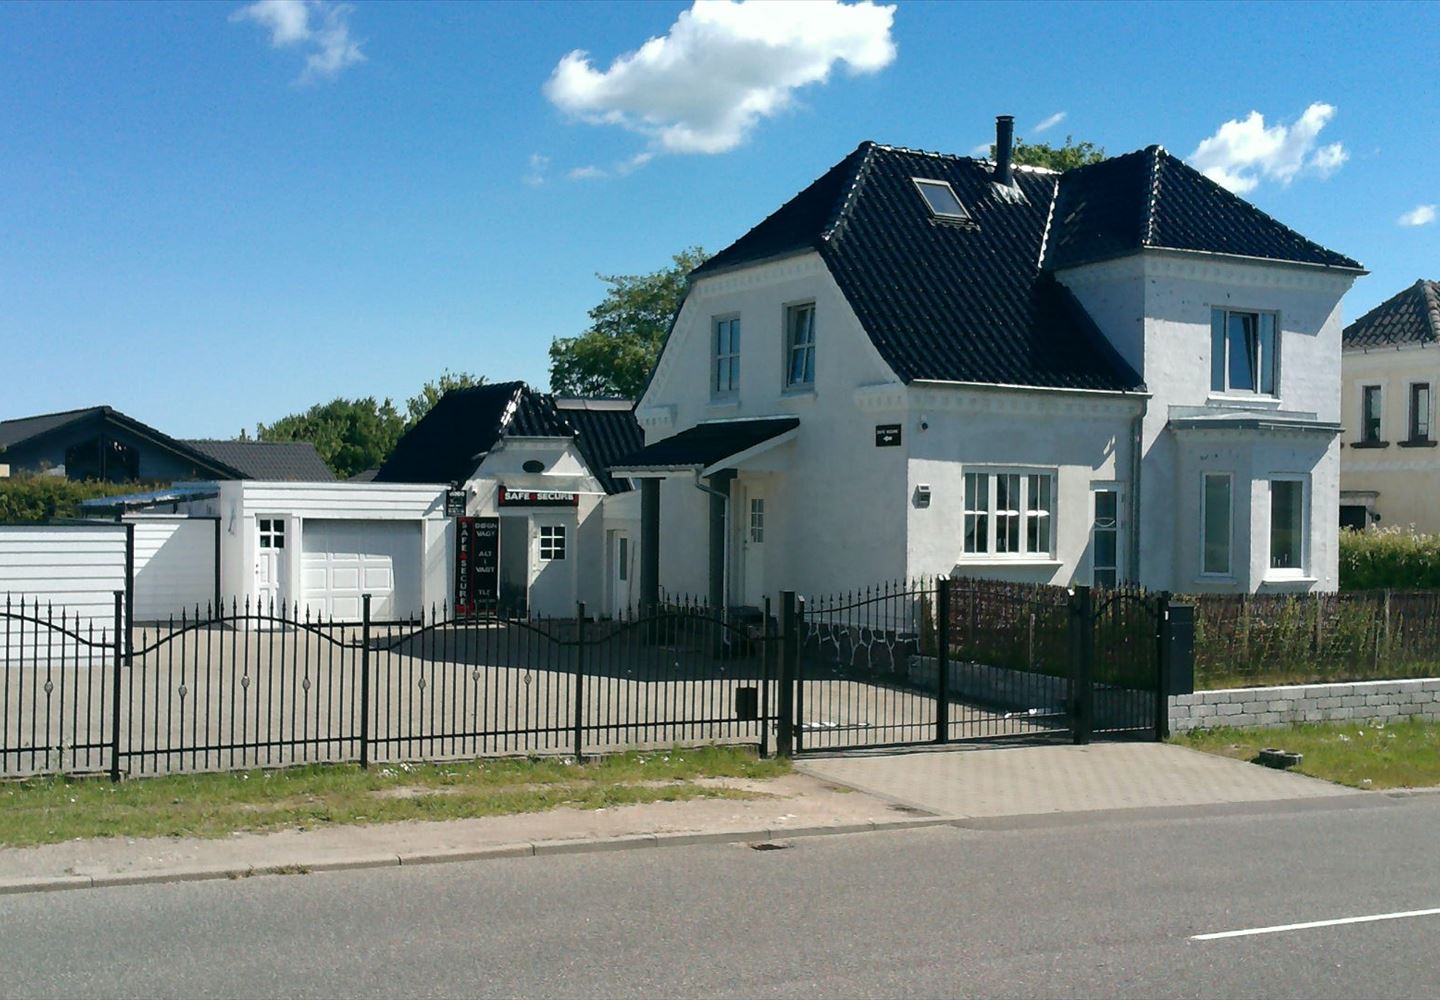 Åsumvej 522, 5240 Odense NØ